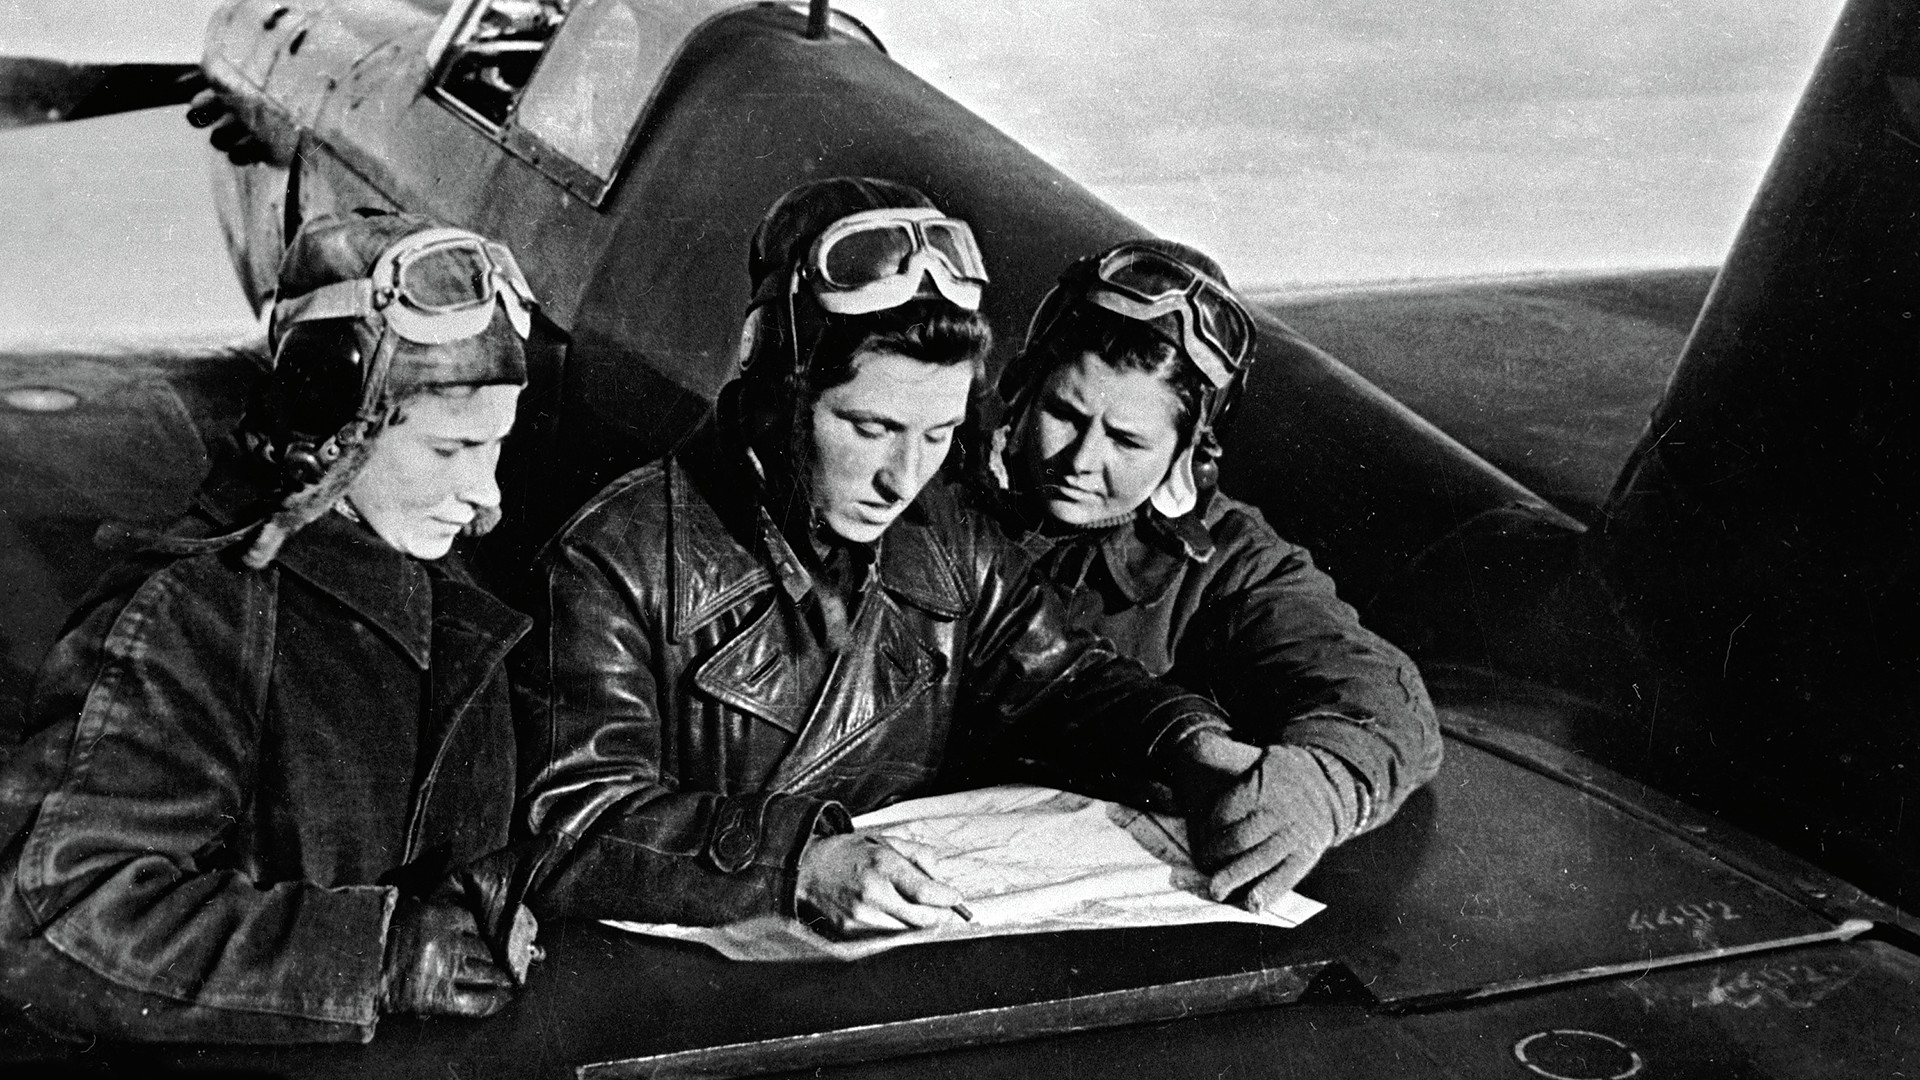 Љиља Литвјак, Каћа Буданова и Марија Кузњецова поред авиона Јак-1